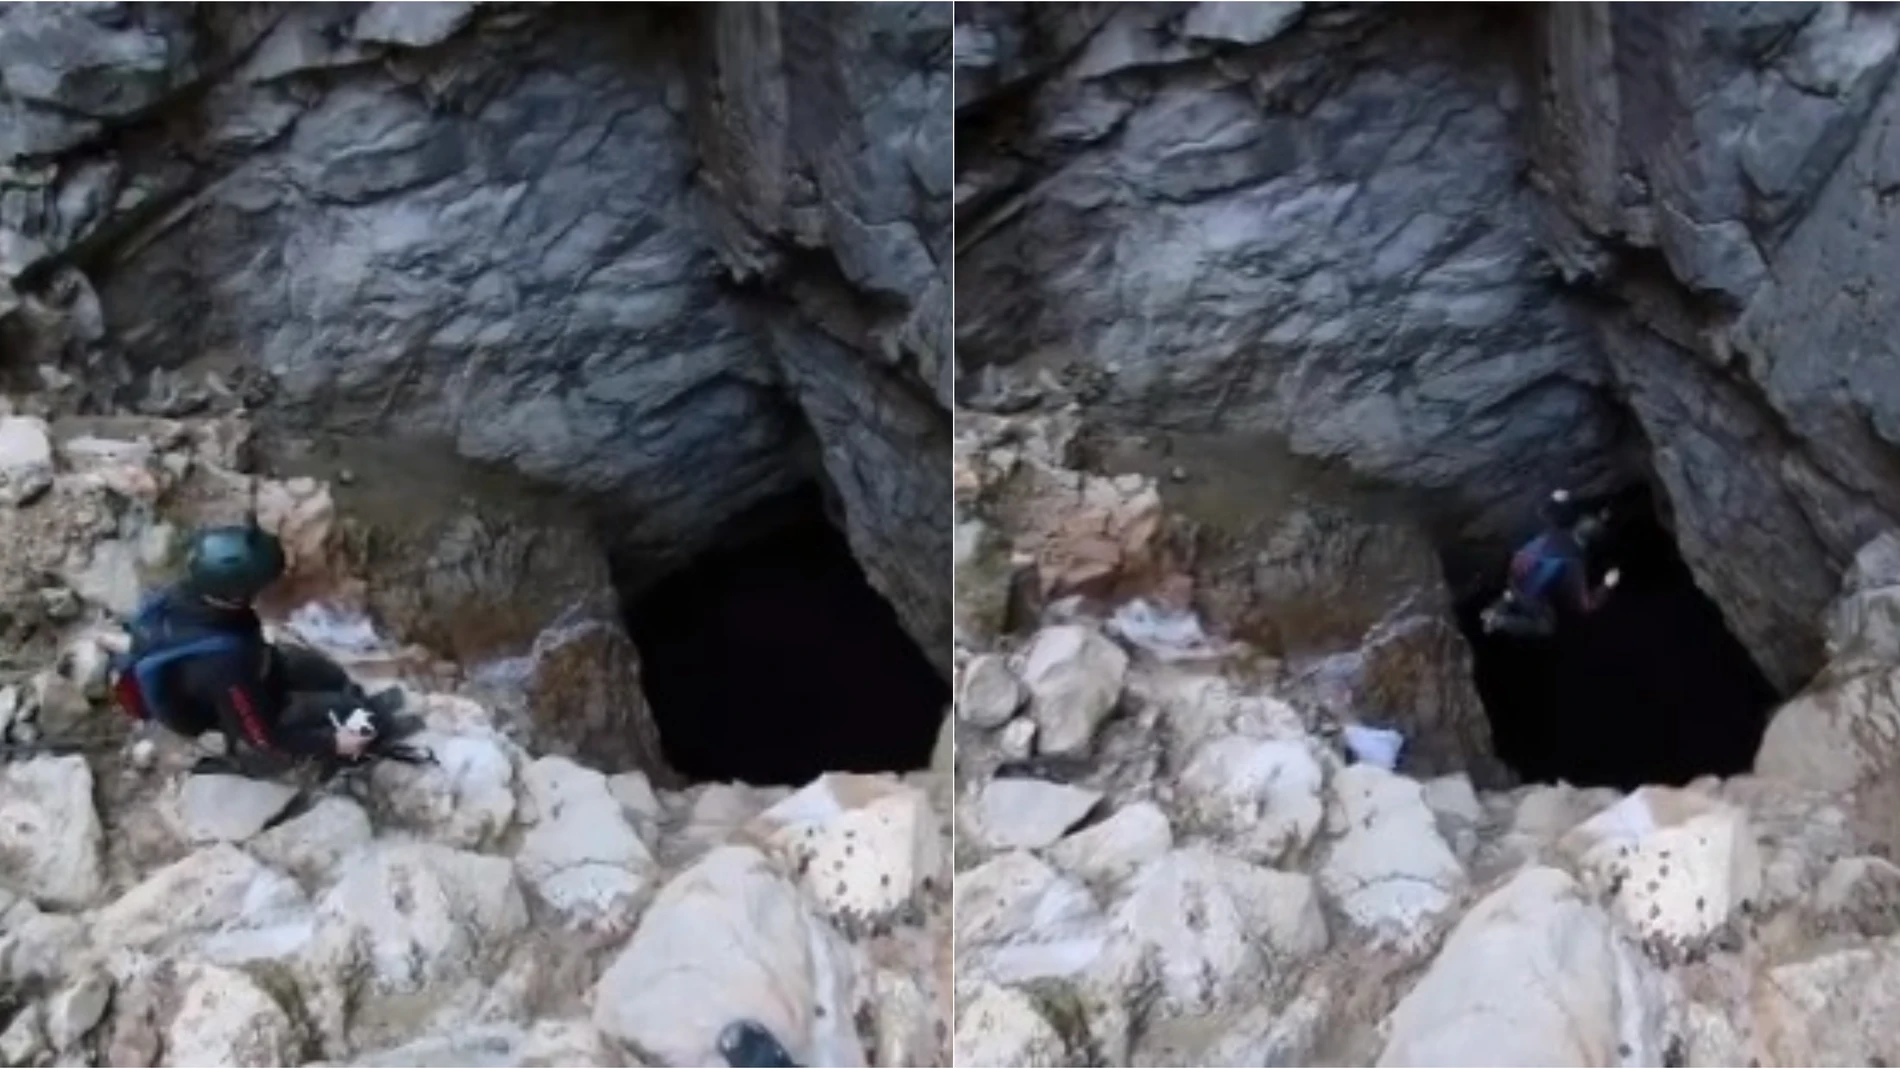 El extremo salto base de Kasper Kumpulainen en una cueva de 4 metros de ancho y 50 de profundidad